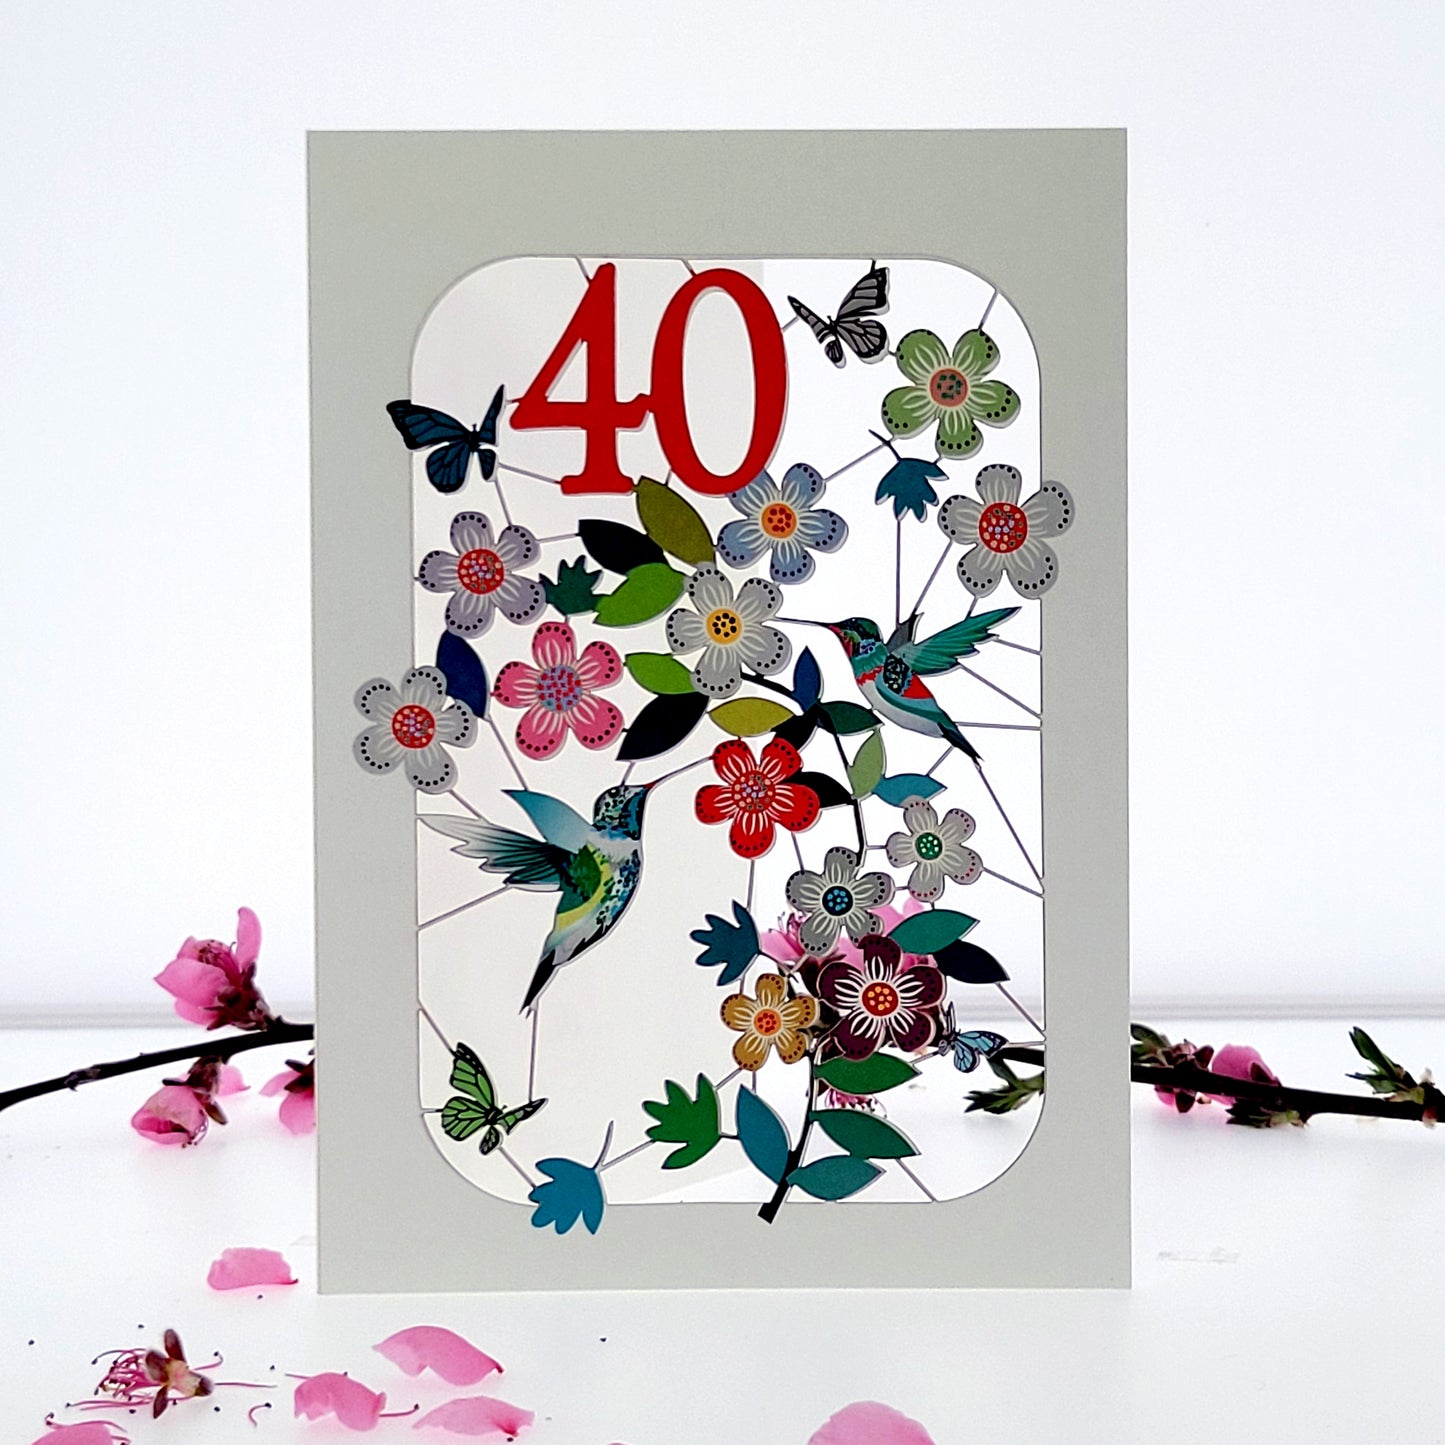 Age 40 Birthday Card, 40th Birthday Card, Humming Bird Card - GF040